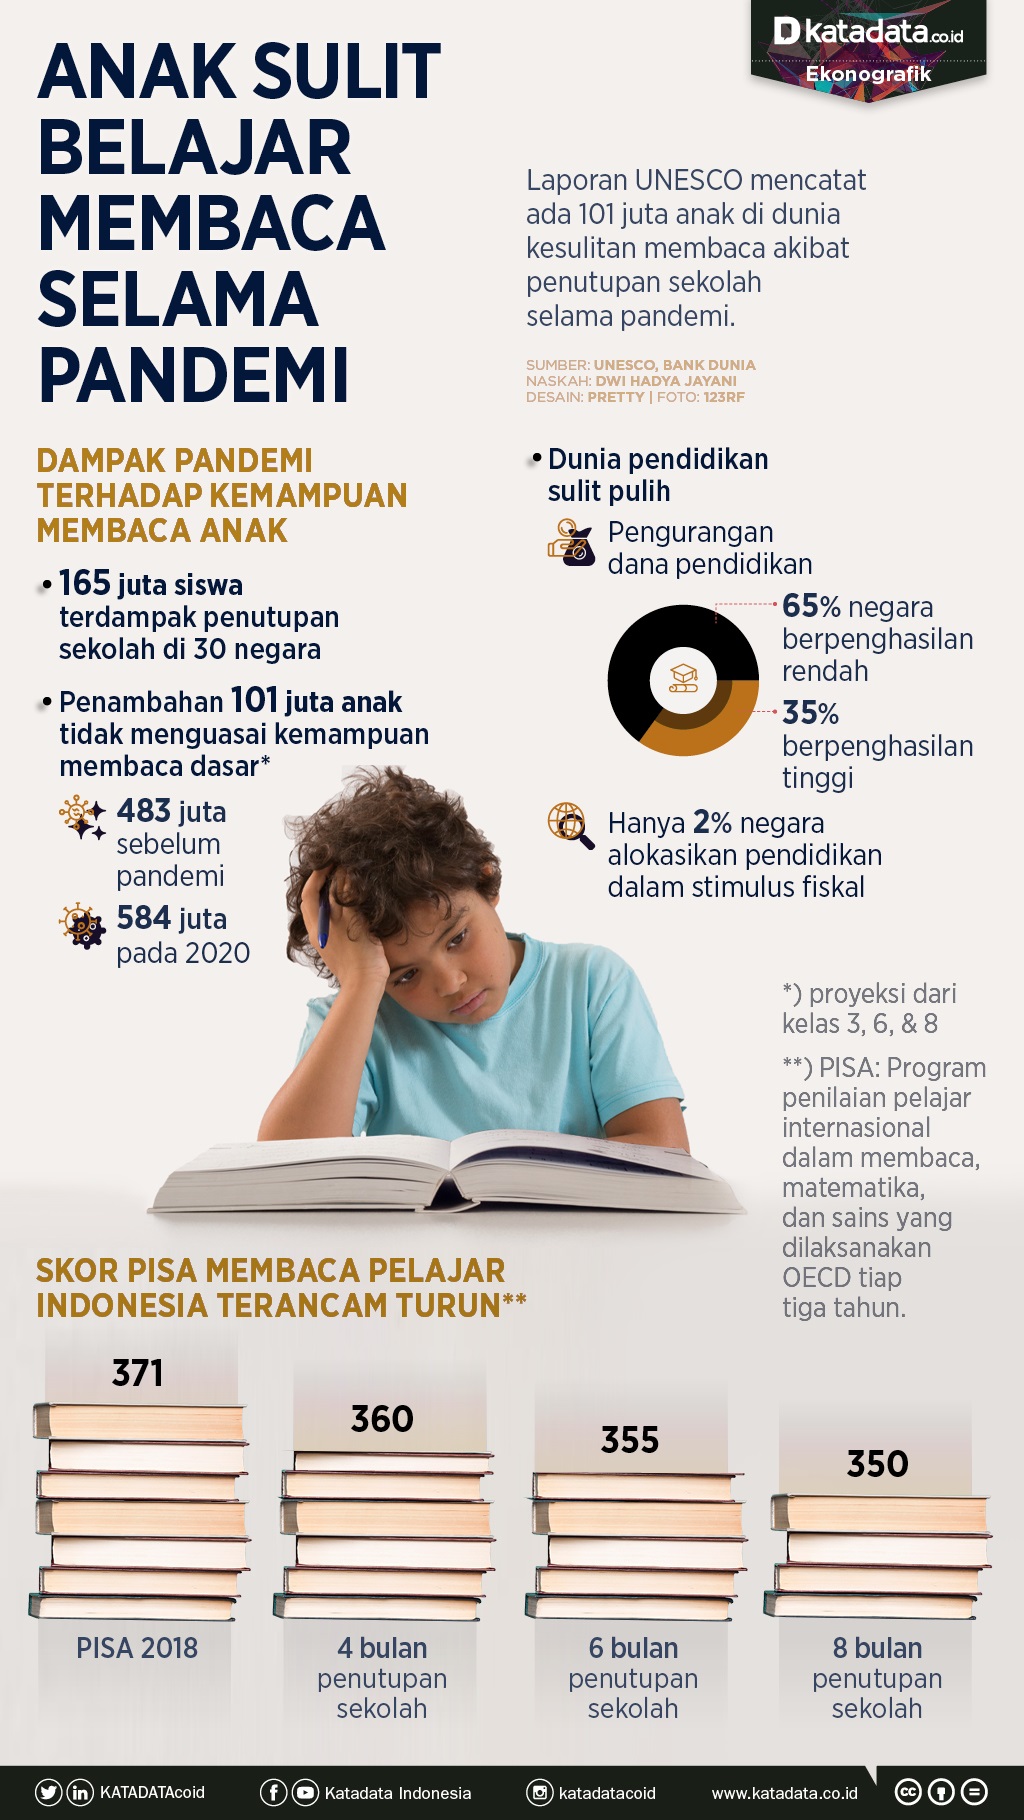 Infografik_Anak sulit belajar membaca selama pandemi